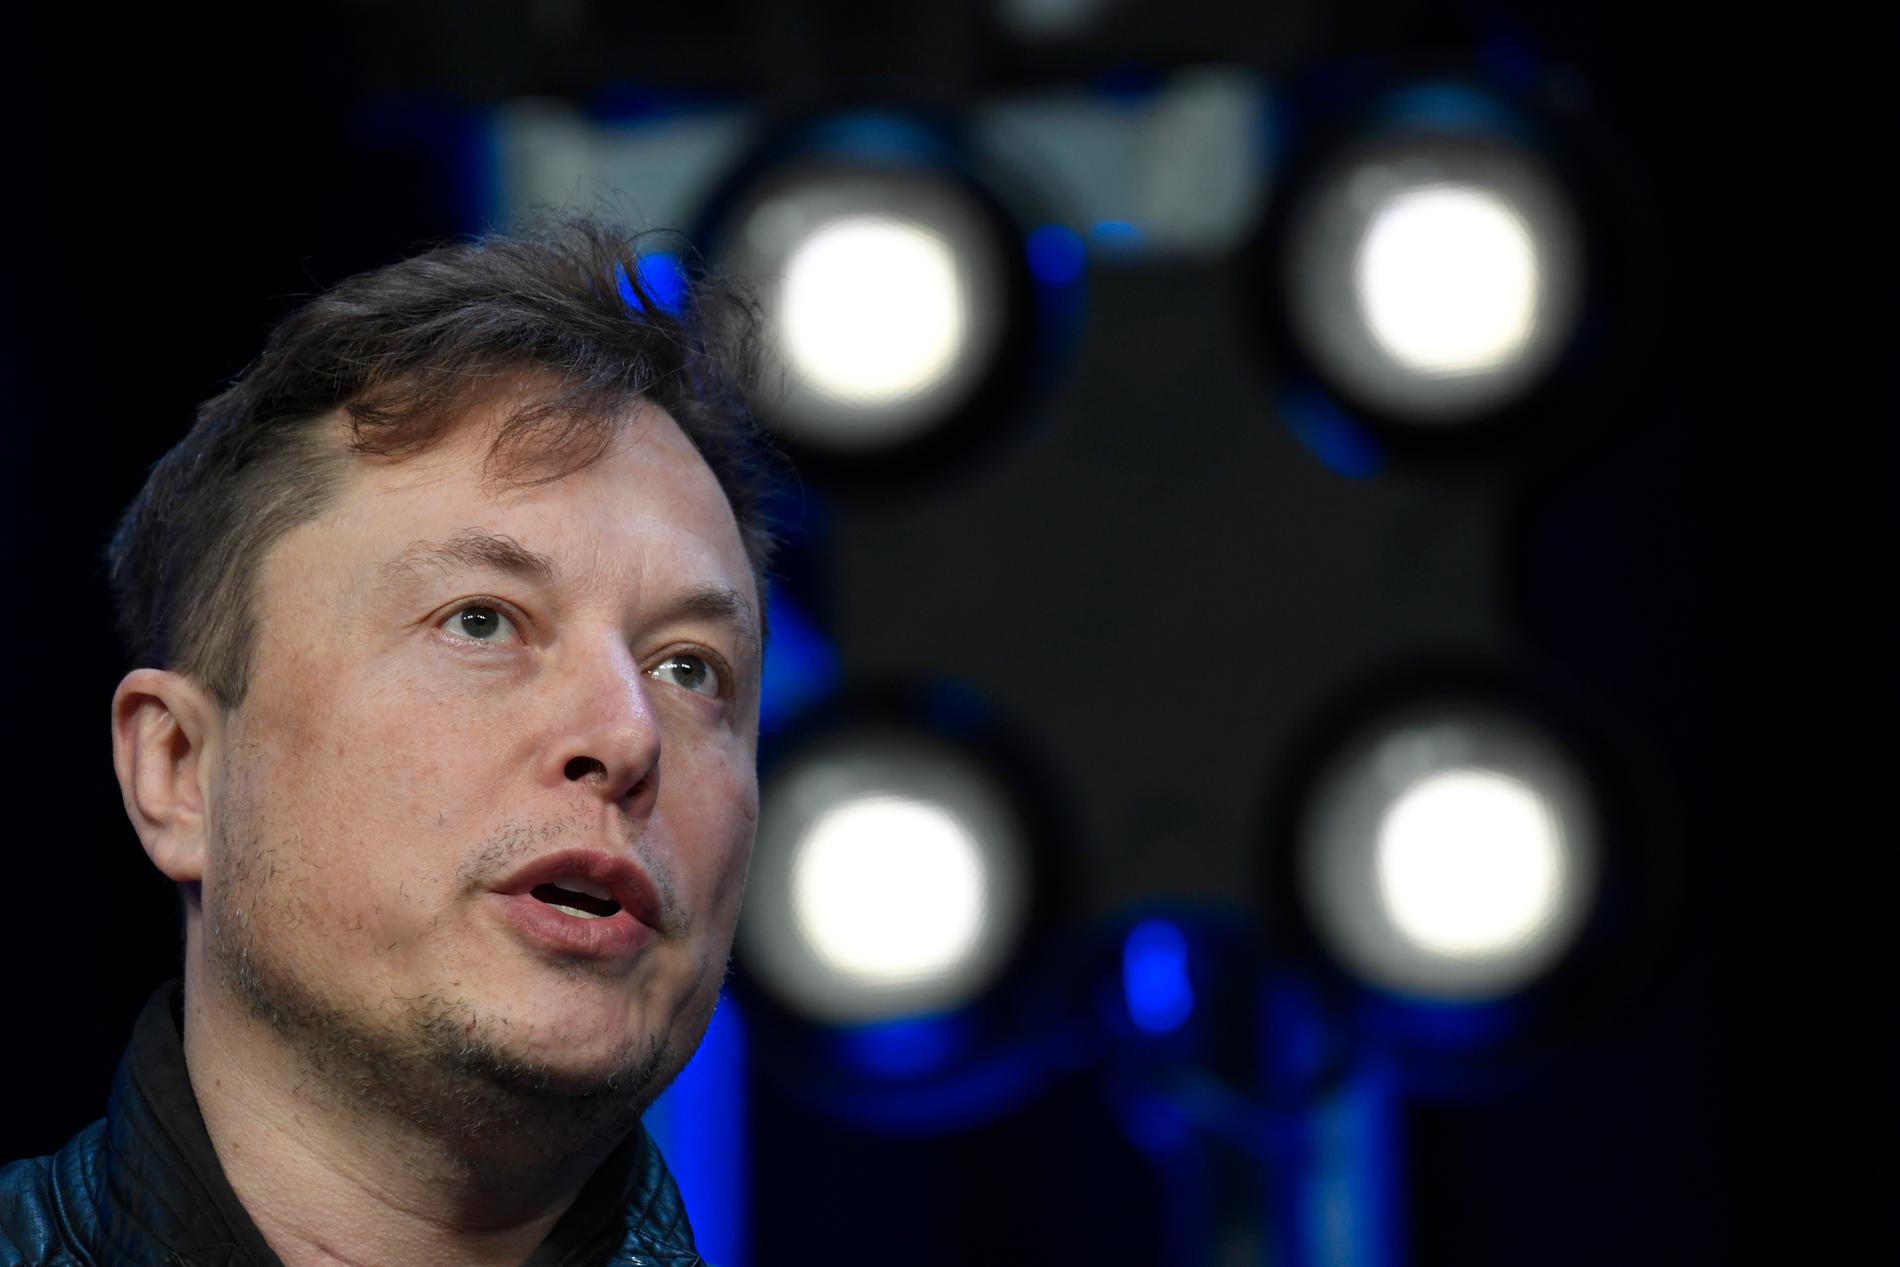 Elon Musks köp av Twitter kom inte oväntat – men konsekvenserna kan bli stora, skriver Mattias Beijmo.